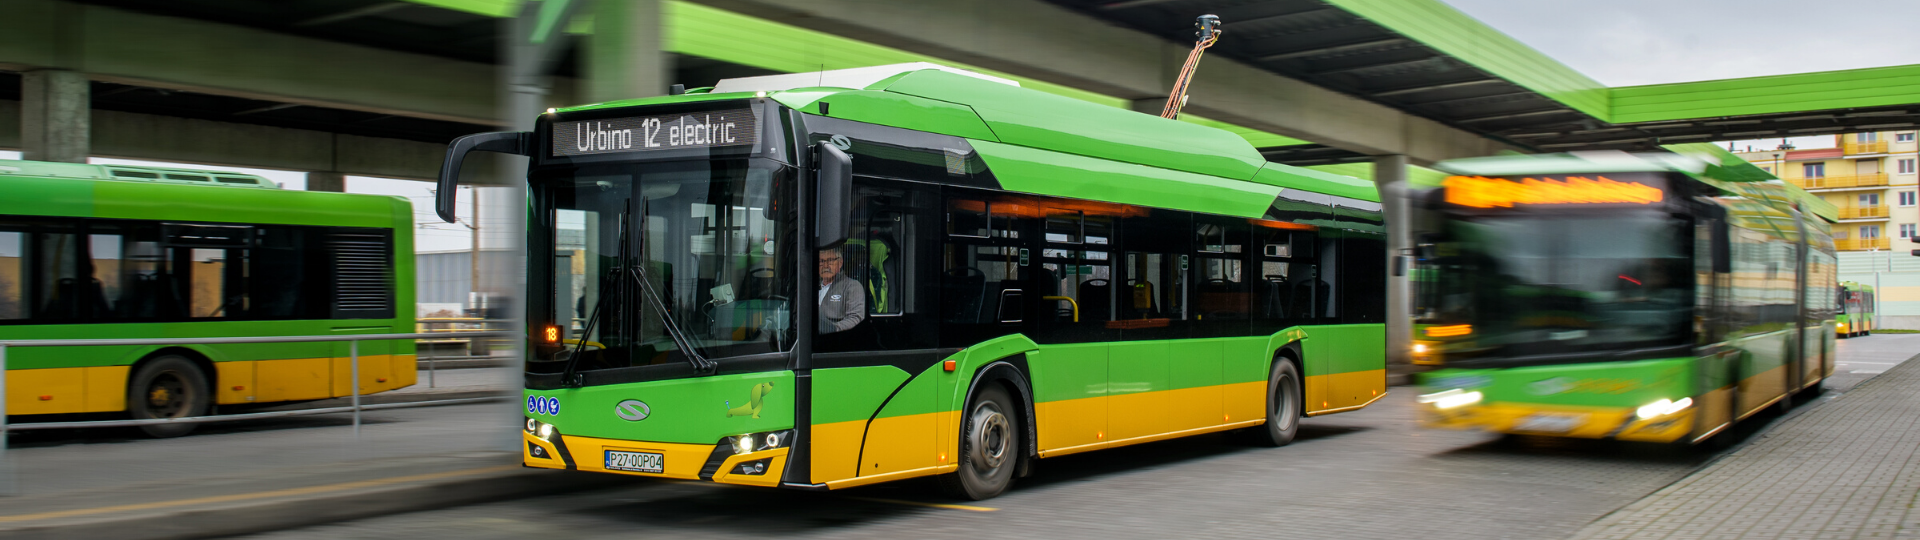 Posen investiert in weitere elektrische Busse. Auftrag über 37 Solaris-Einheiten